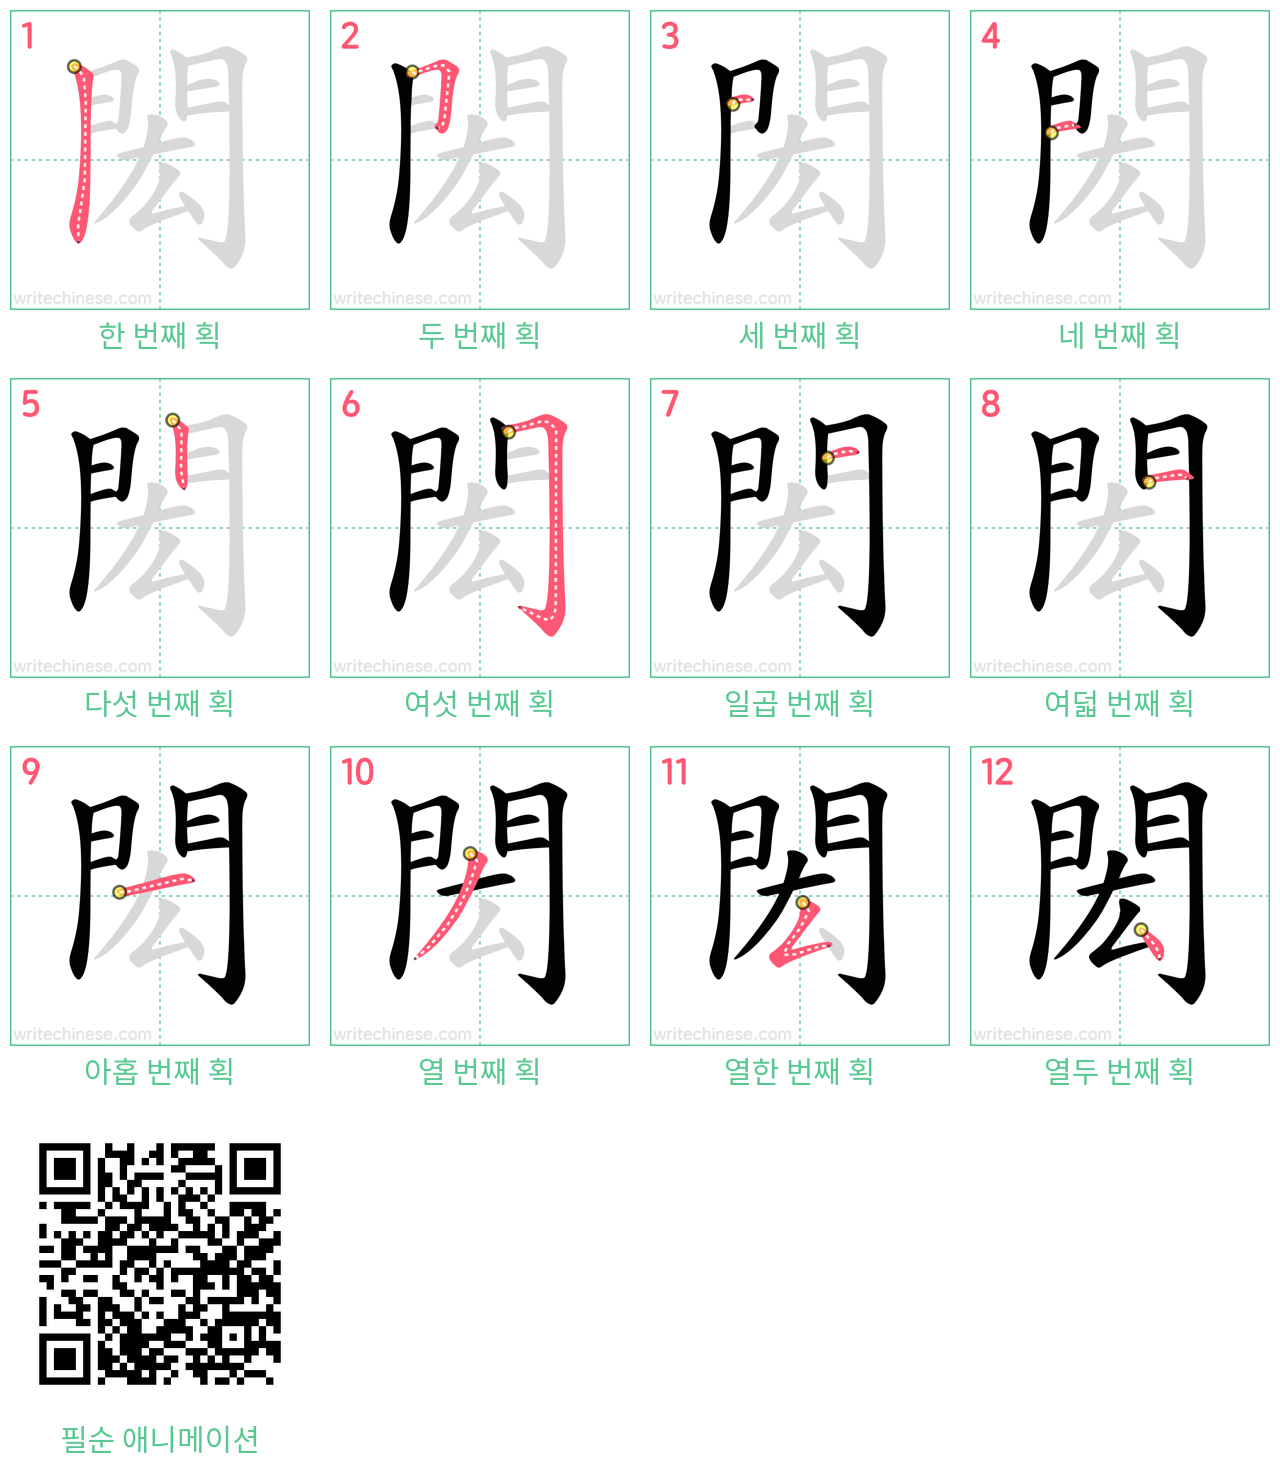 閎 step-by-step stroke order diagrams